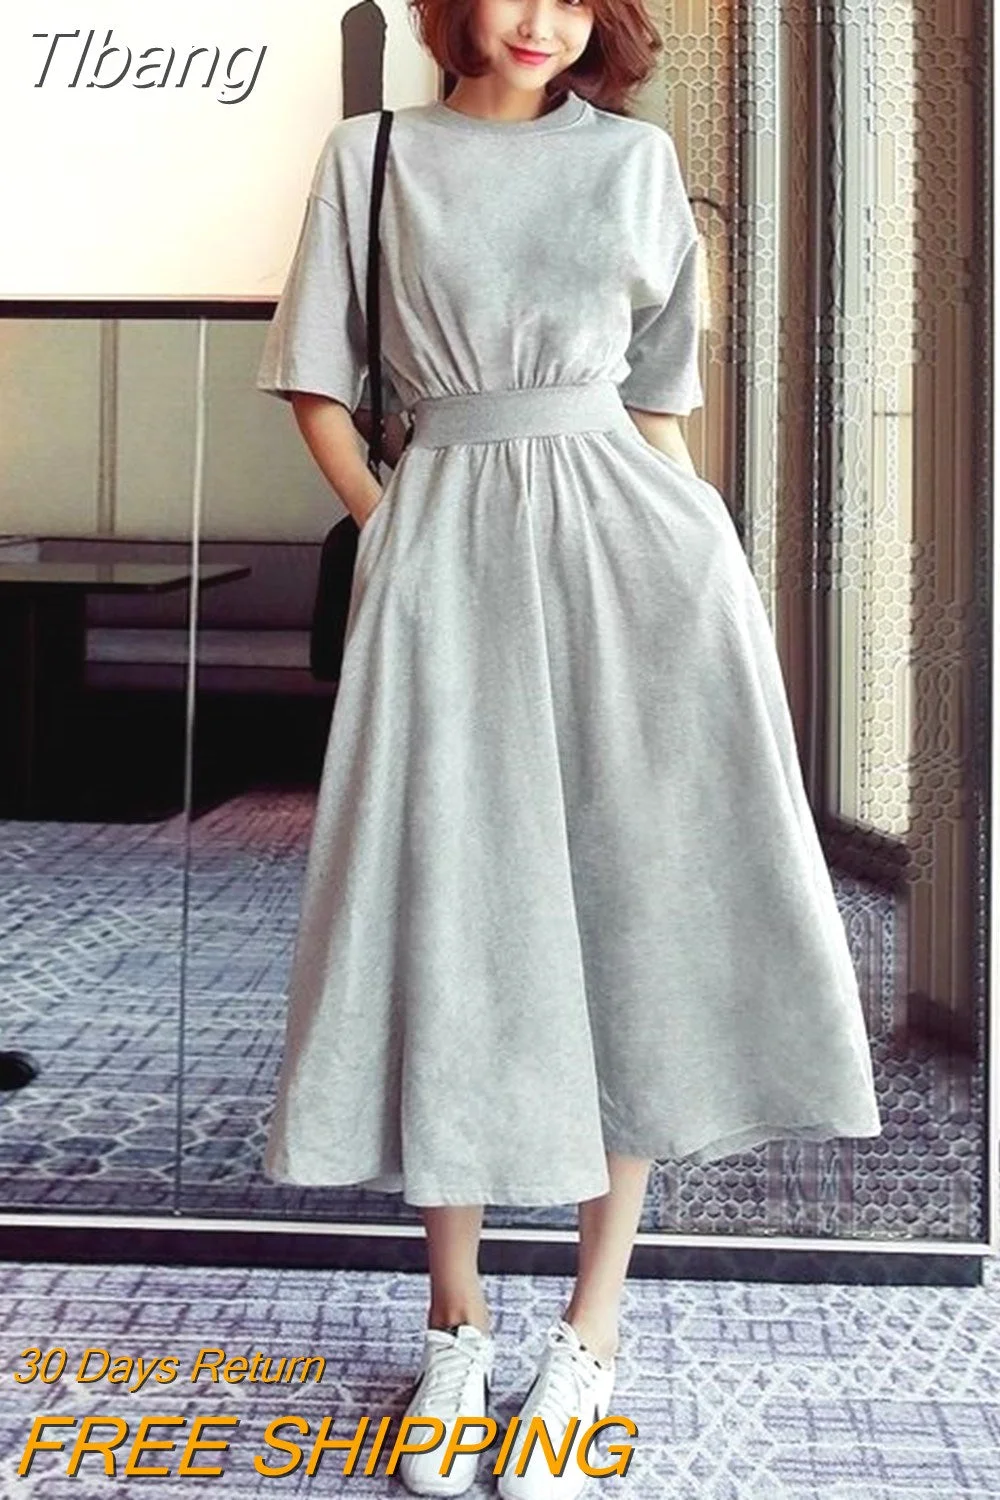 Tlbang Sleeve Dress Girl's Large Skirt Korean Half Sleeve Waist Long Skirt High Waist Round Neck Loose Casual Skirt Woman Dress